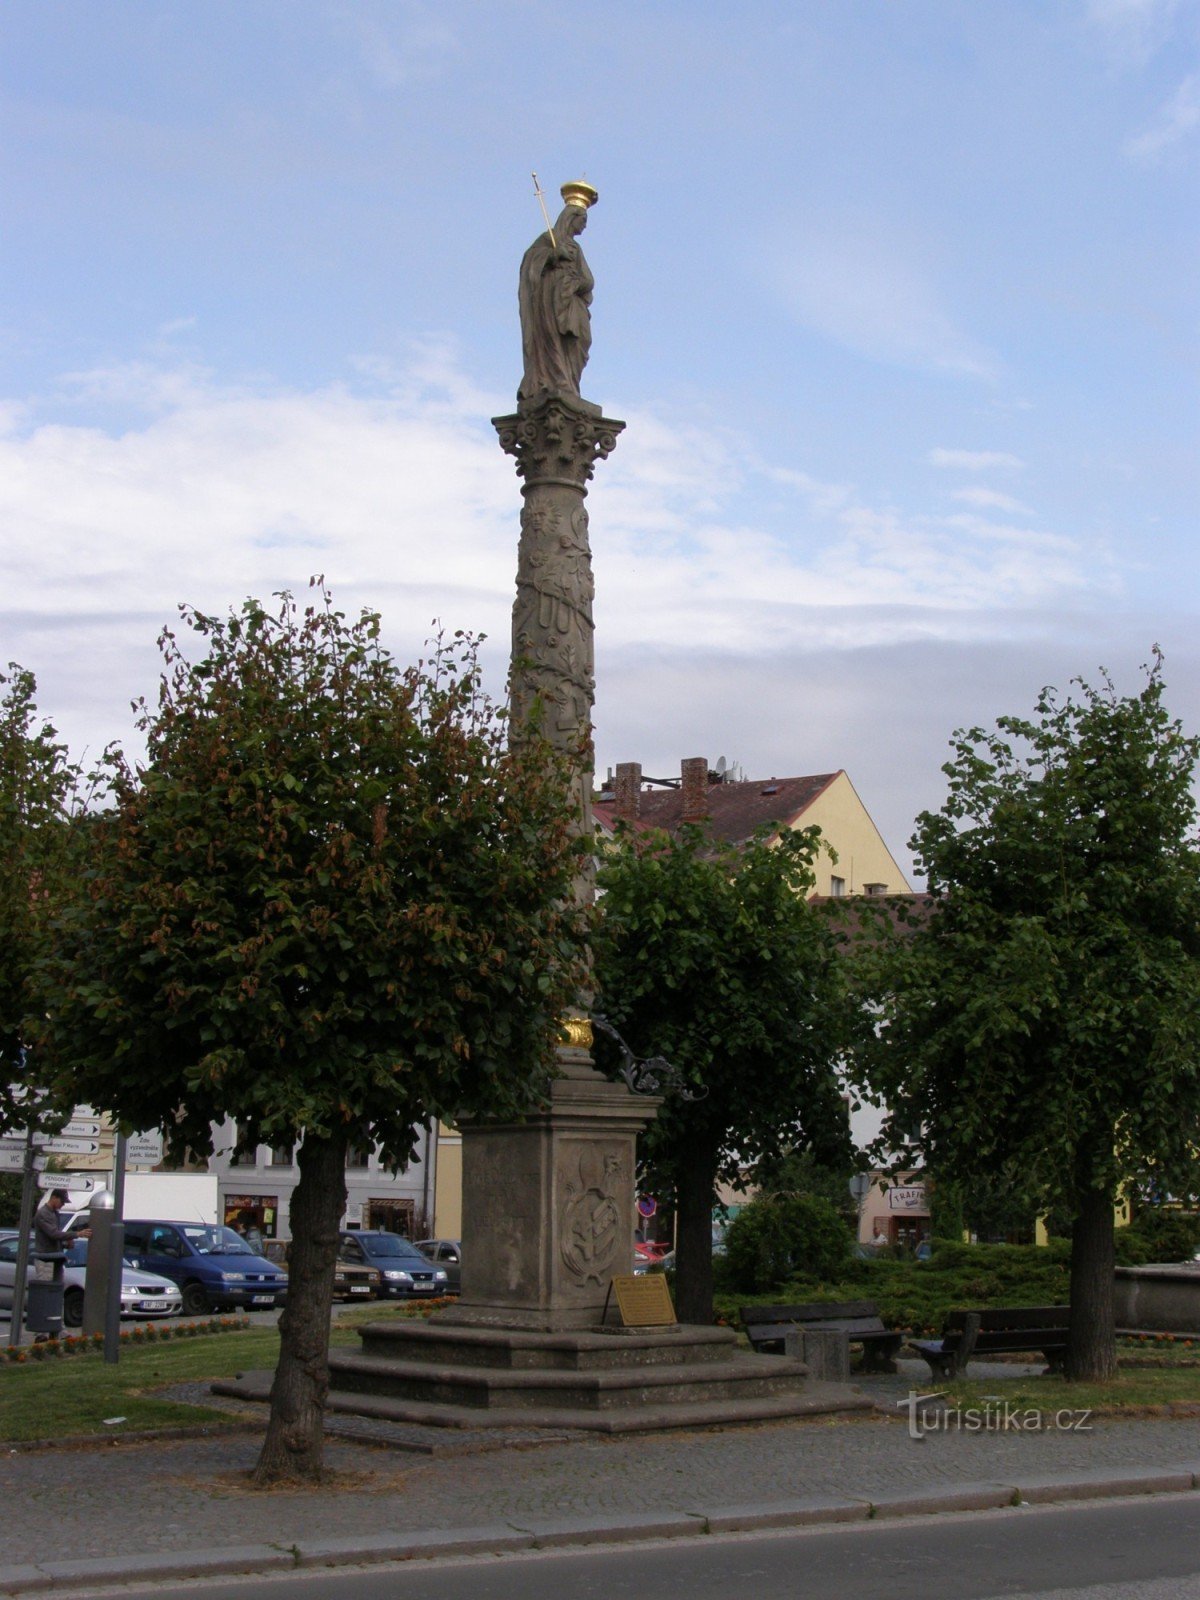 Policja nad Metují - kolumna maryjna z figurą Matki Boskiej